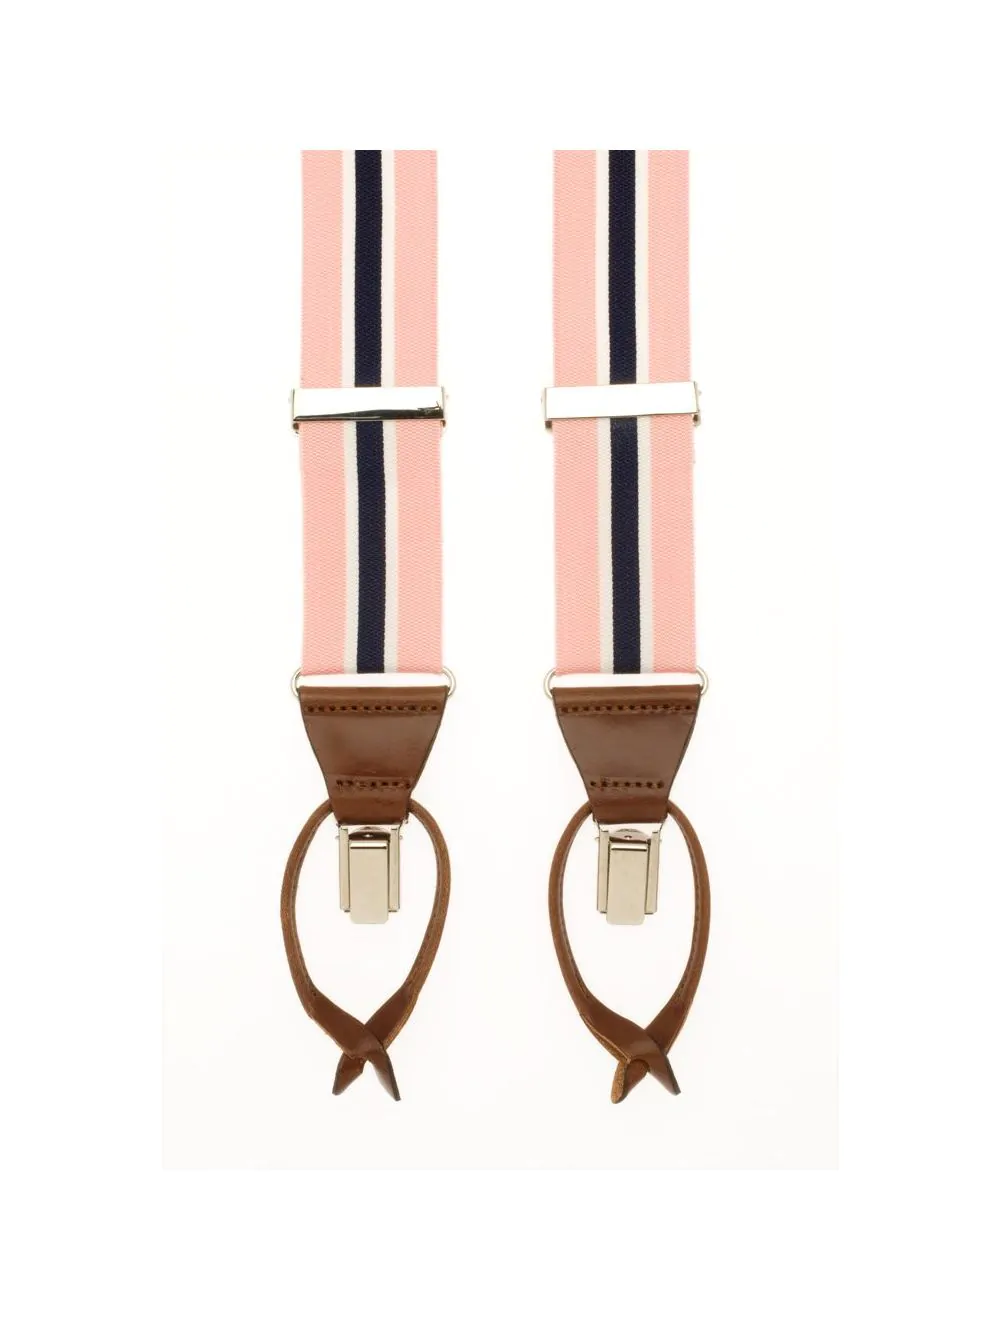 metaal afbetalen Motiveren Gestreepte bretels in de kleur roze blauw van het merk Hein Strijker |  Bretels.nl